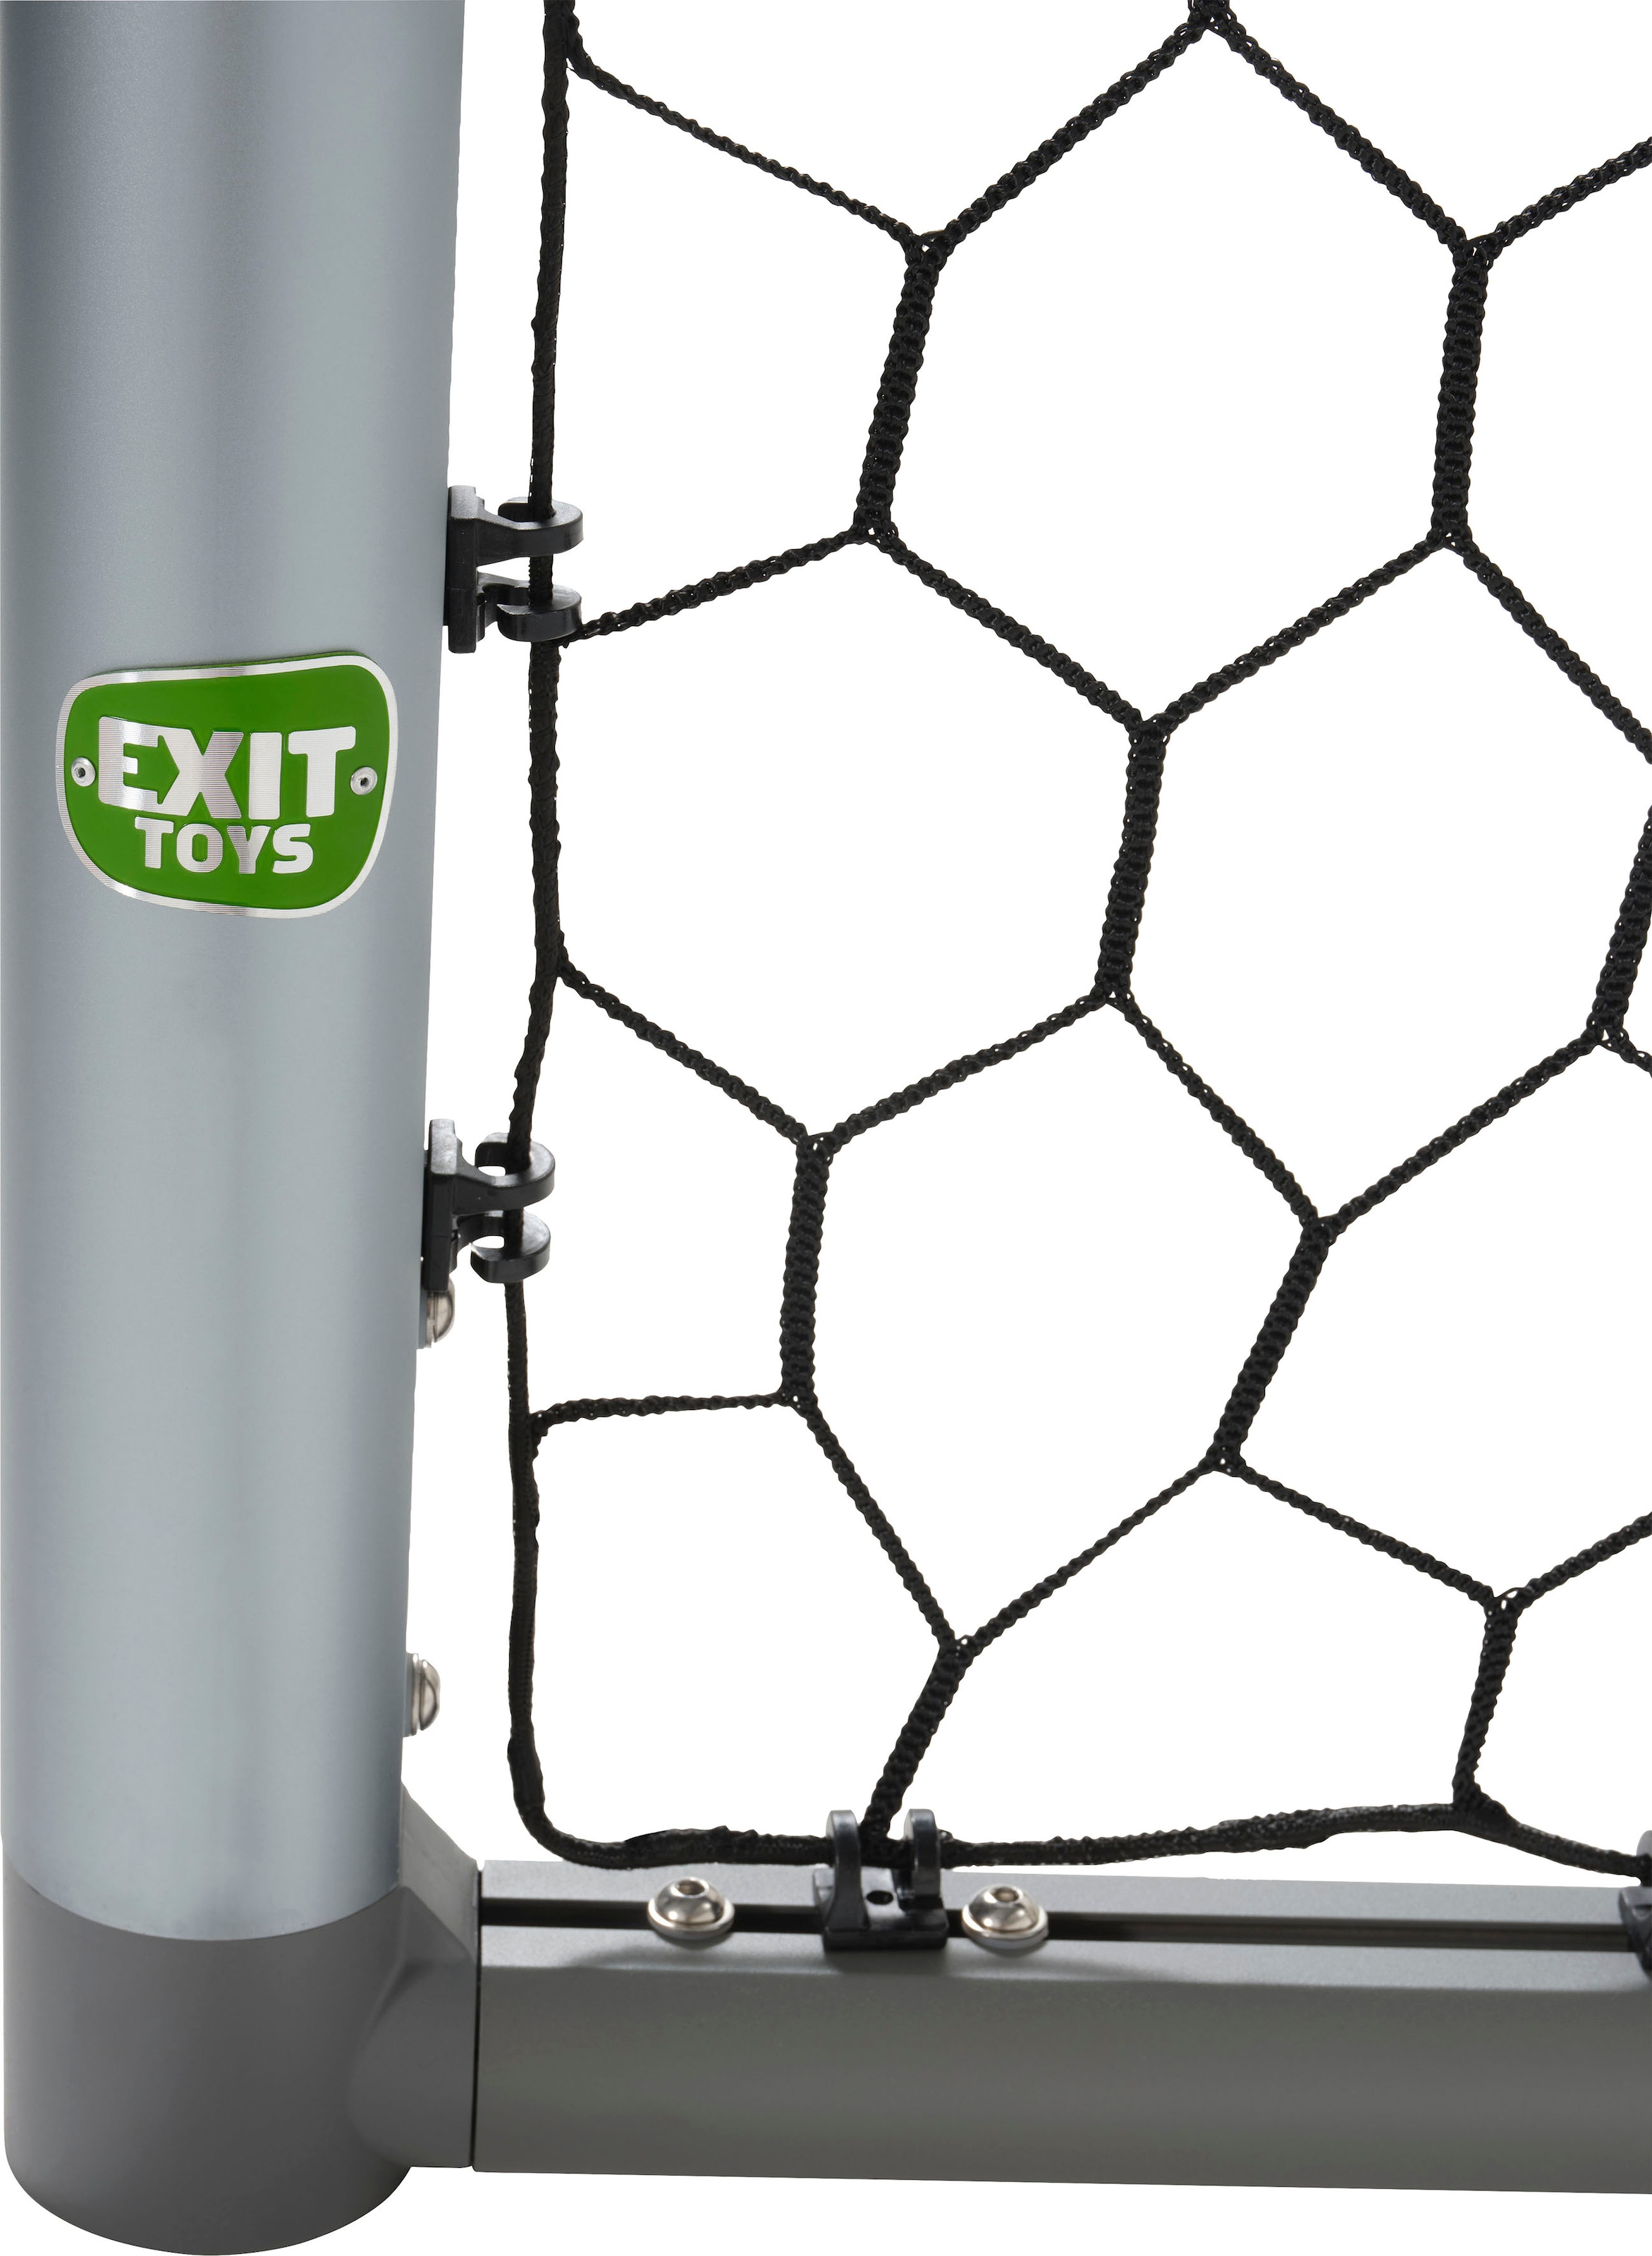 EXIT Fußballtor »Scala«, BxTxH: 220x80x120 cm, aus Aluminium